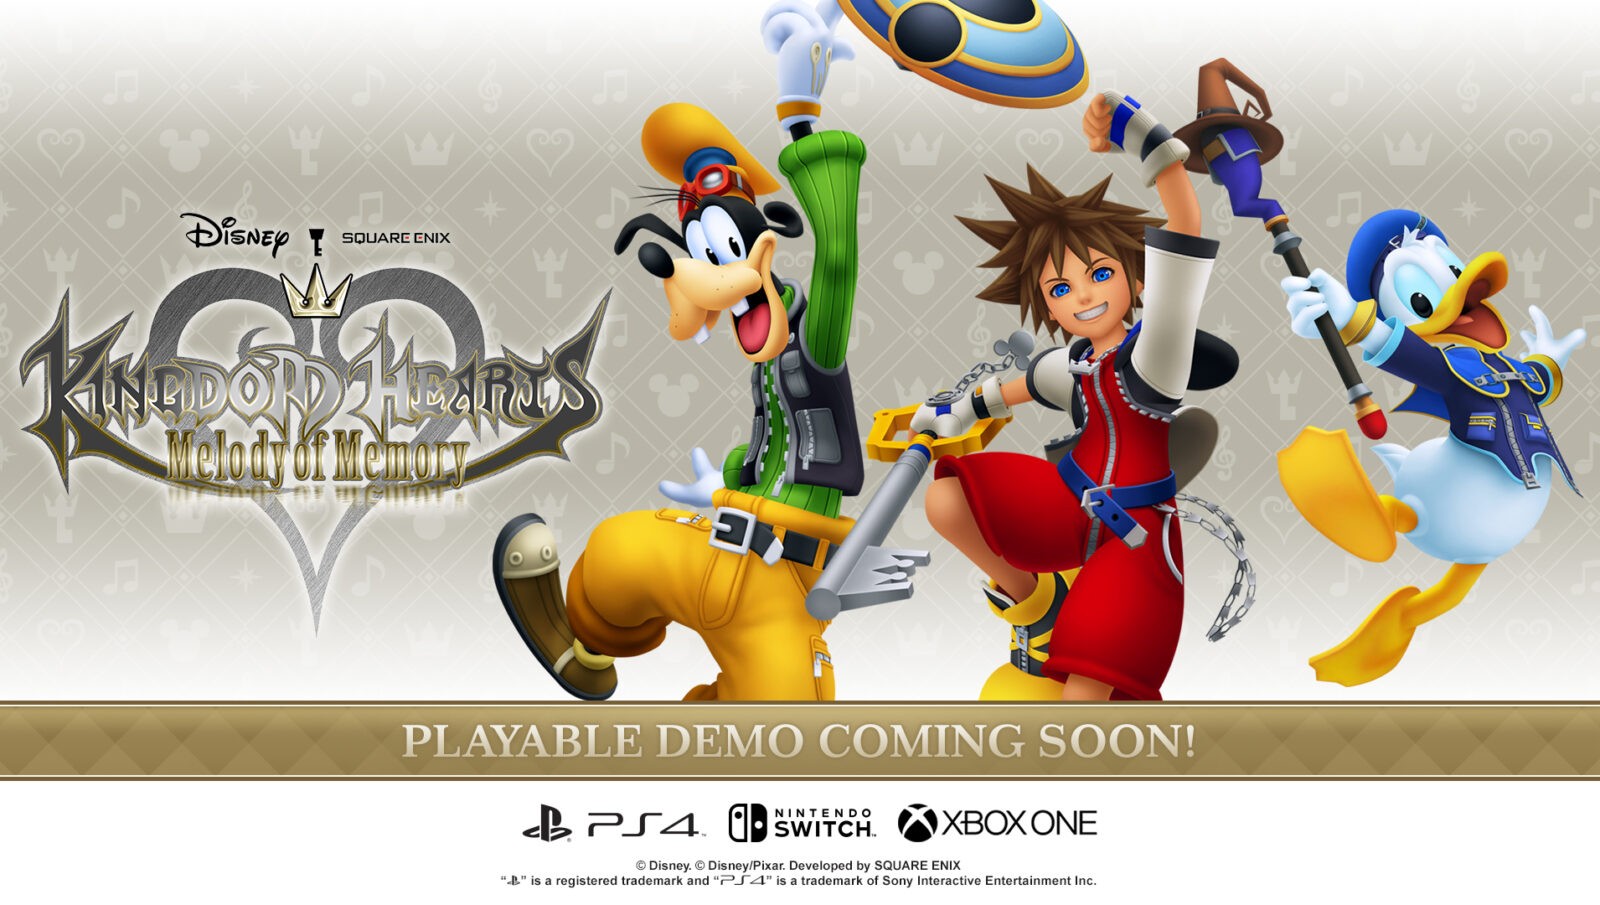 Demo Gratis Kingdom Hearts: Melody of Memory Akan Tersedia Pada Bulan Oktober